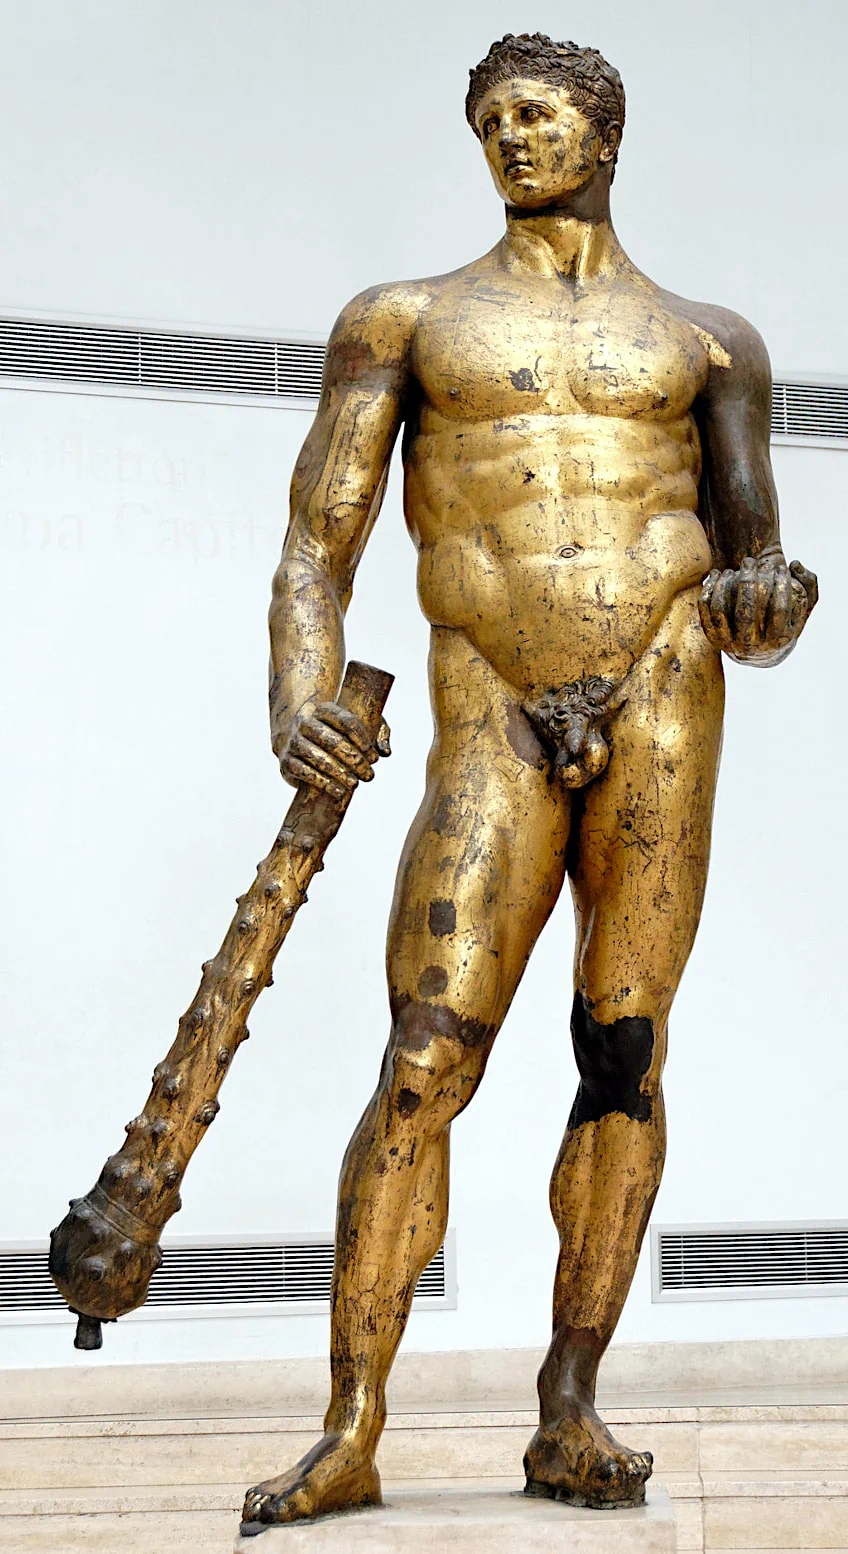 Hercules of the Forum Boarium